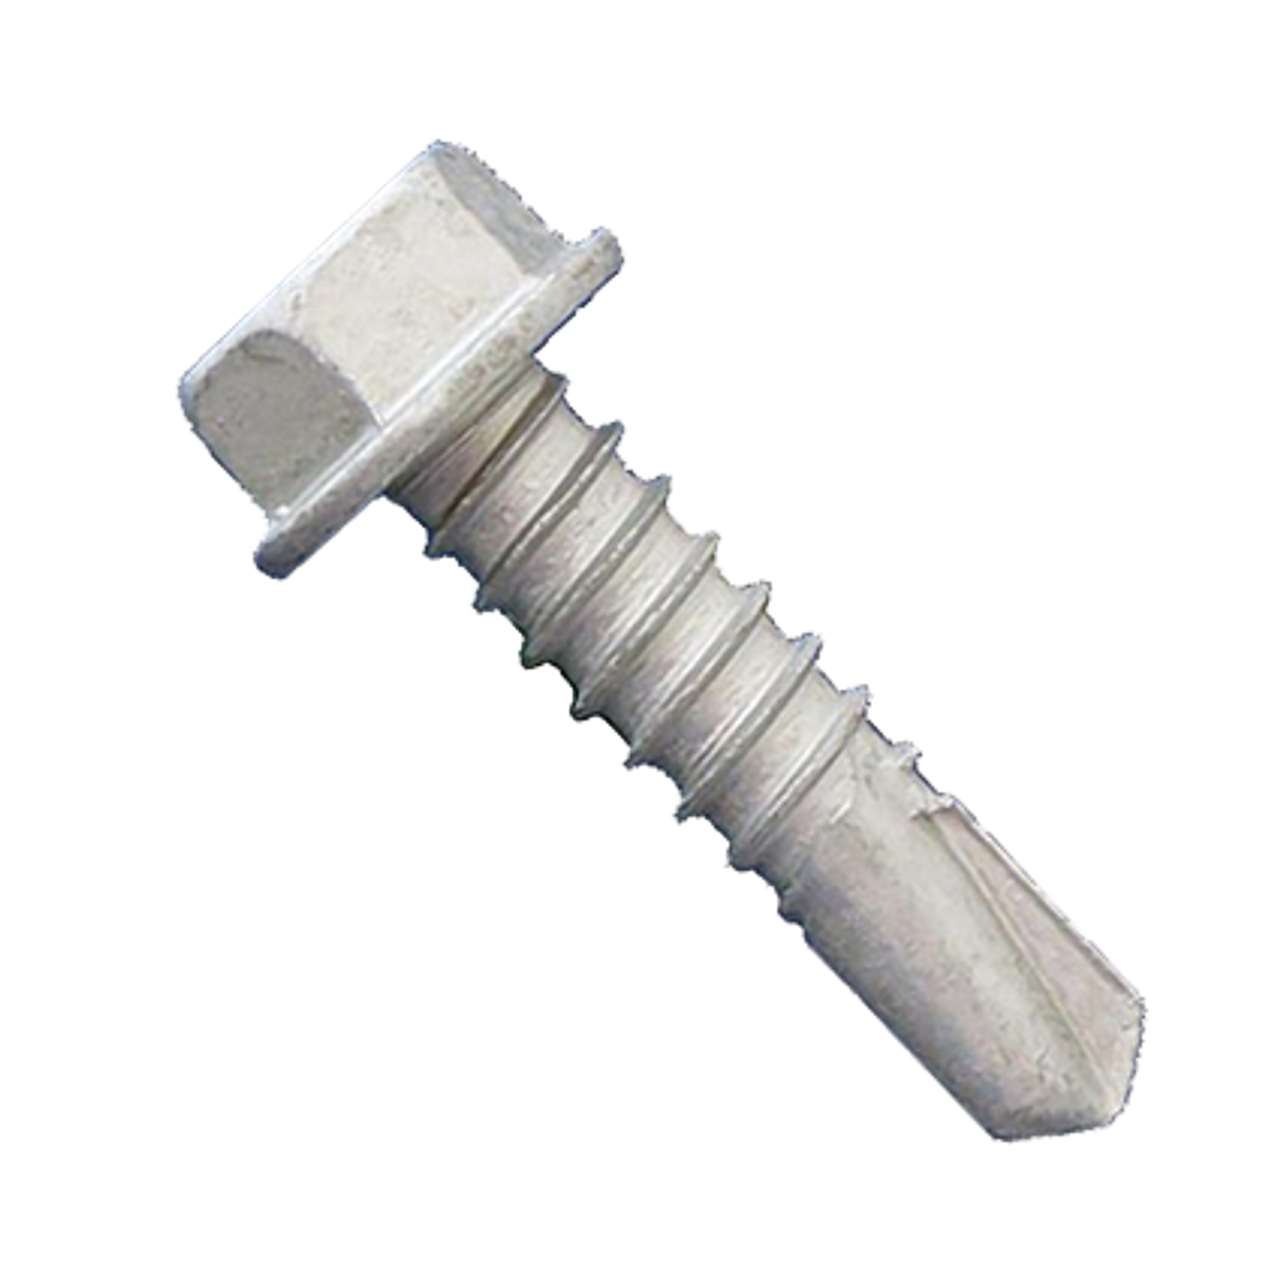 Self drilling screws  SDS  #14(5/16 head) x 3/4" - 1" 500-1000 ctn